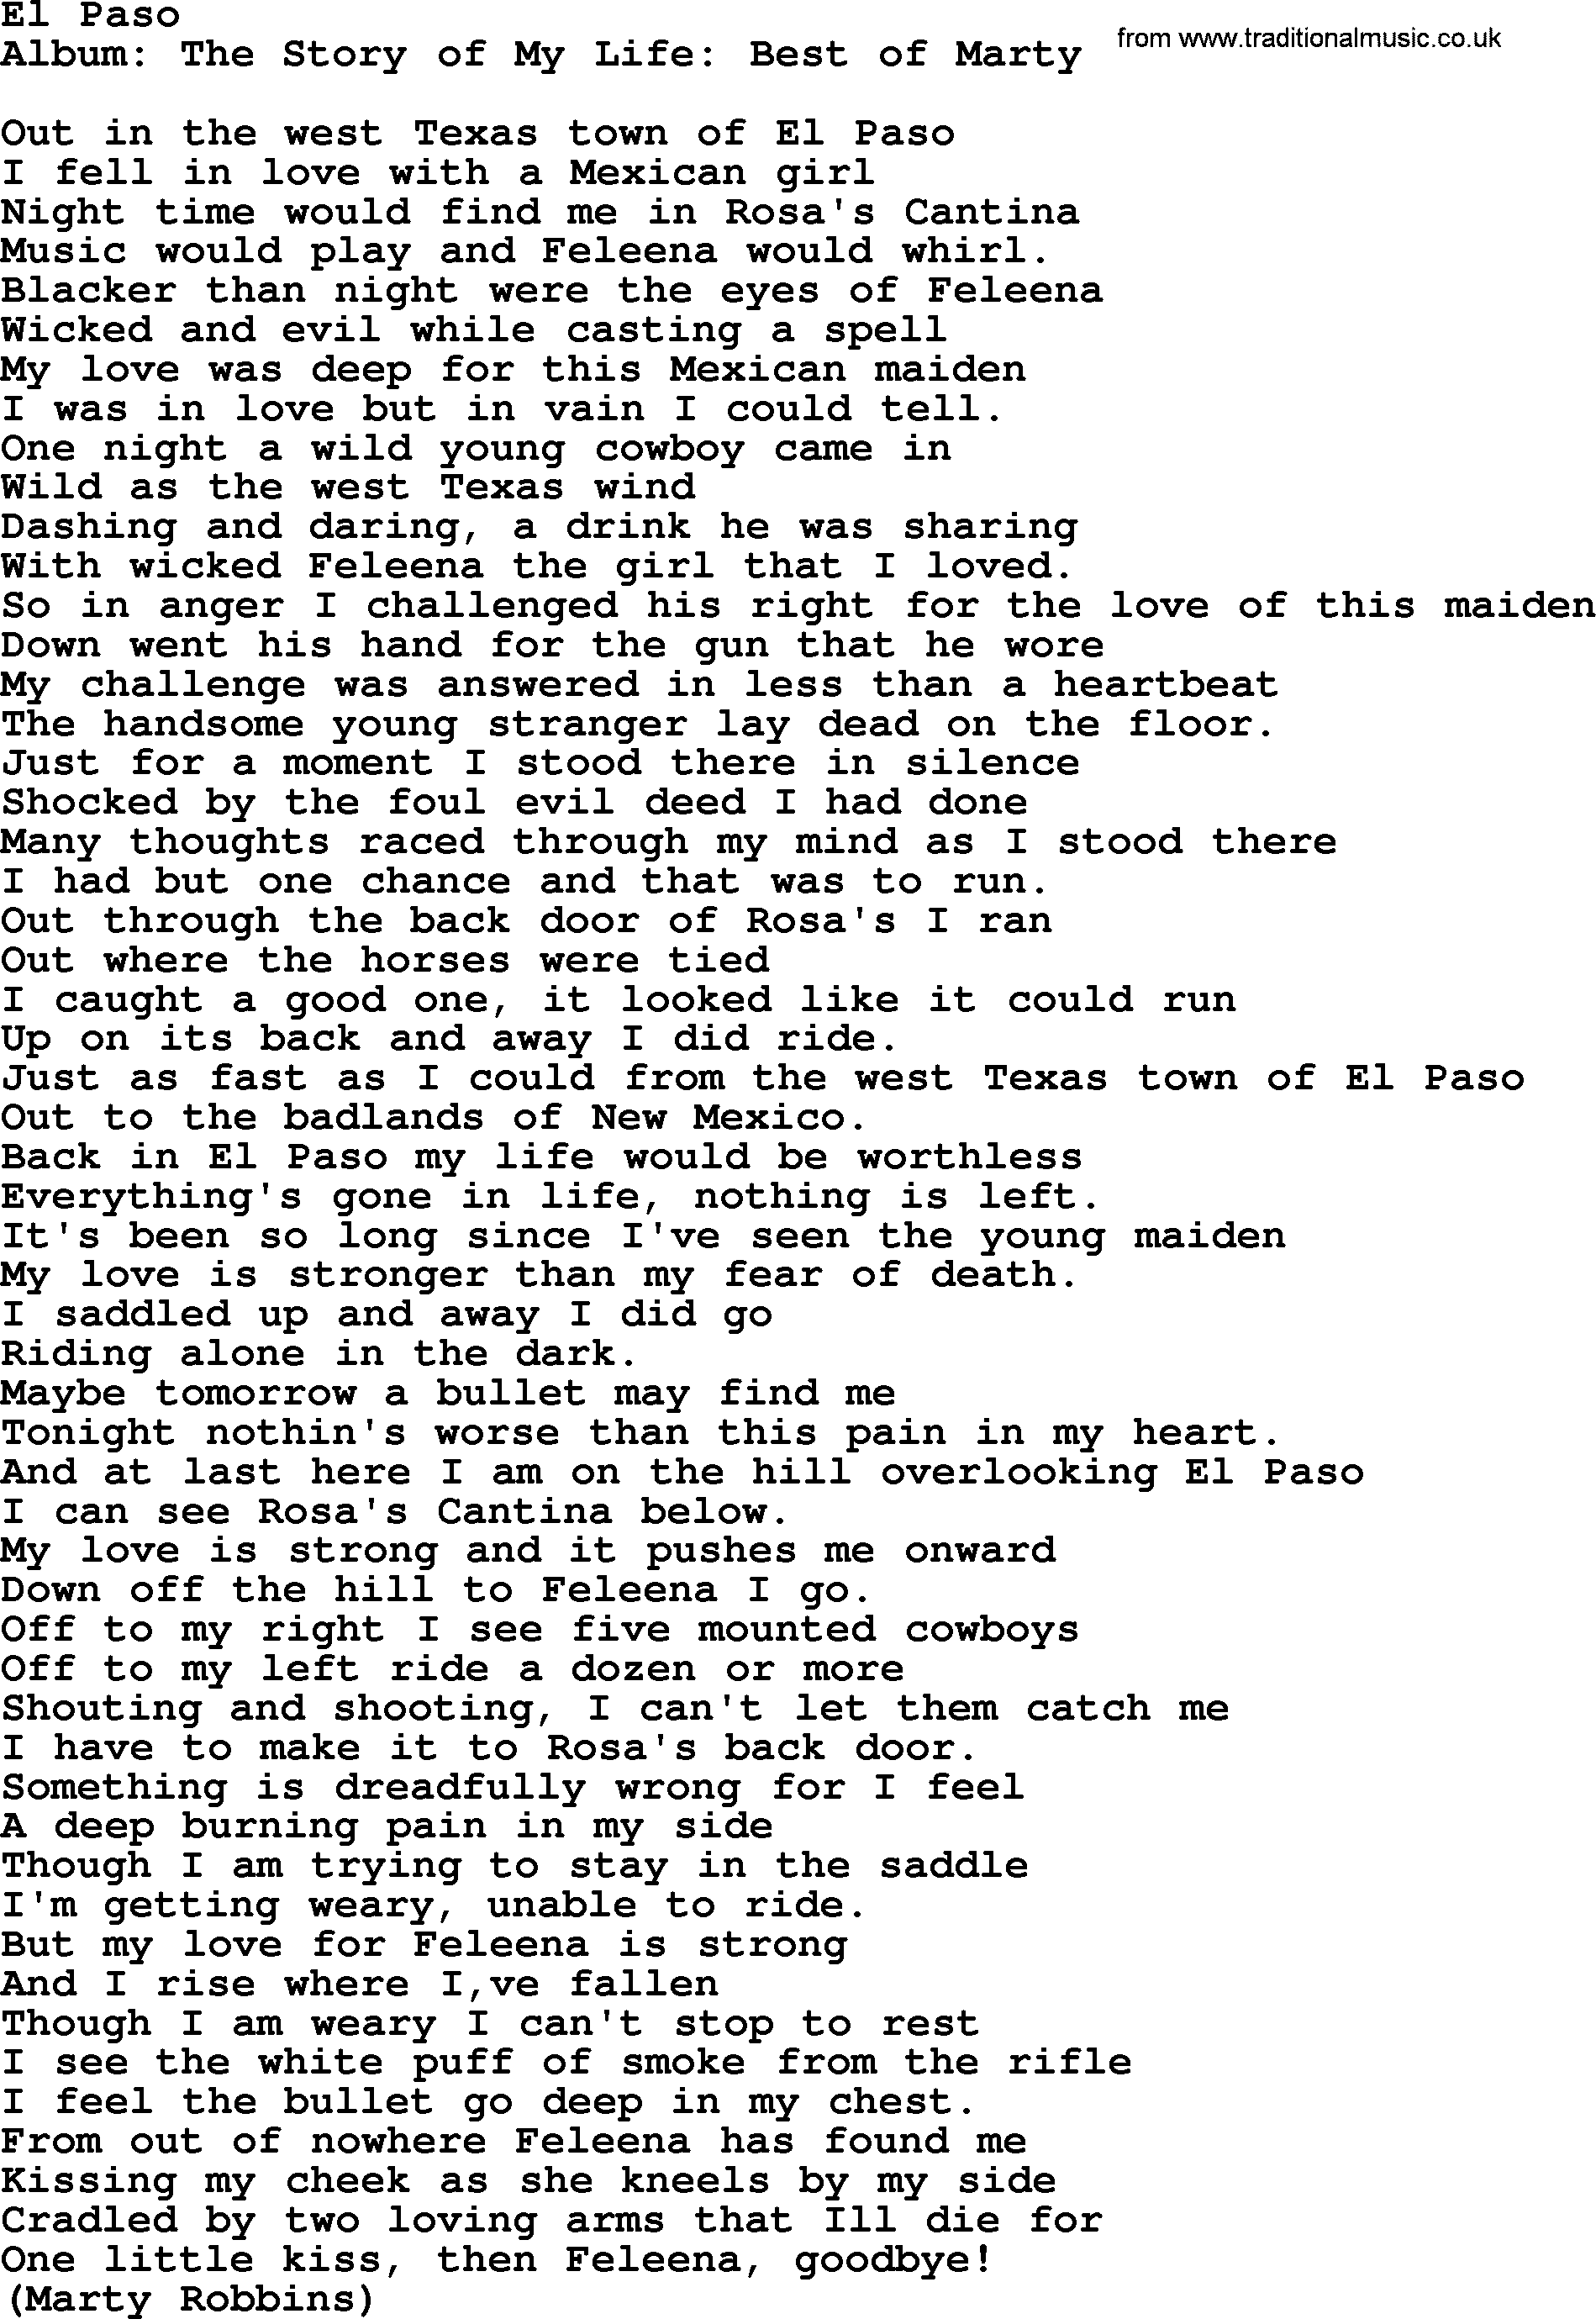 Marty Robbins song: El Paso, lyrics